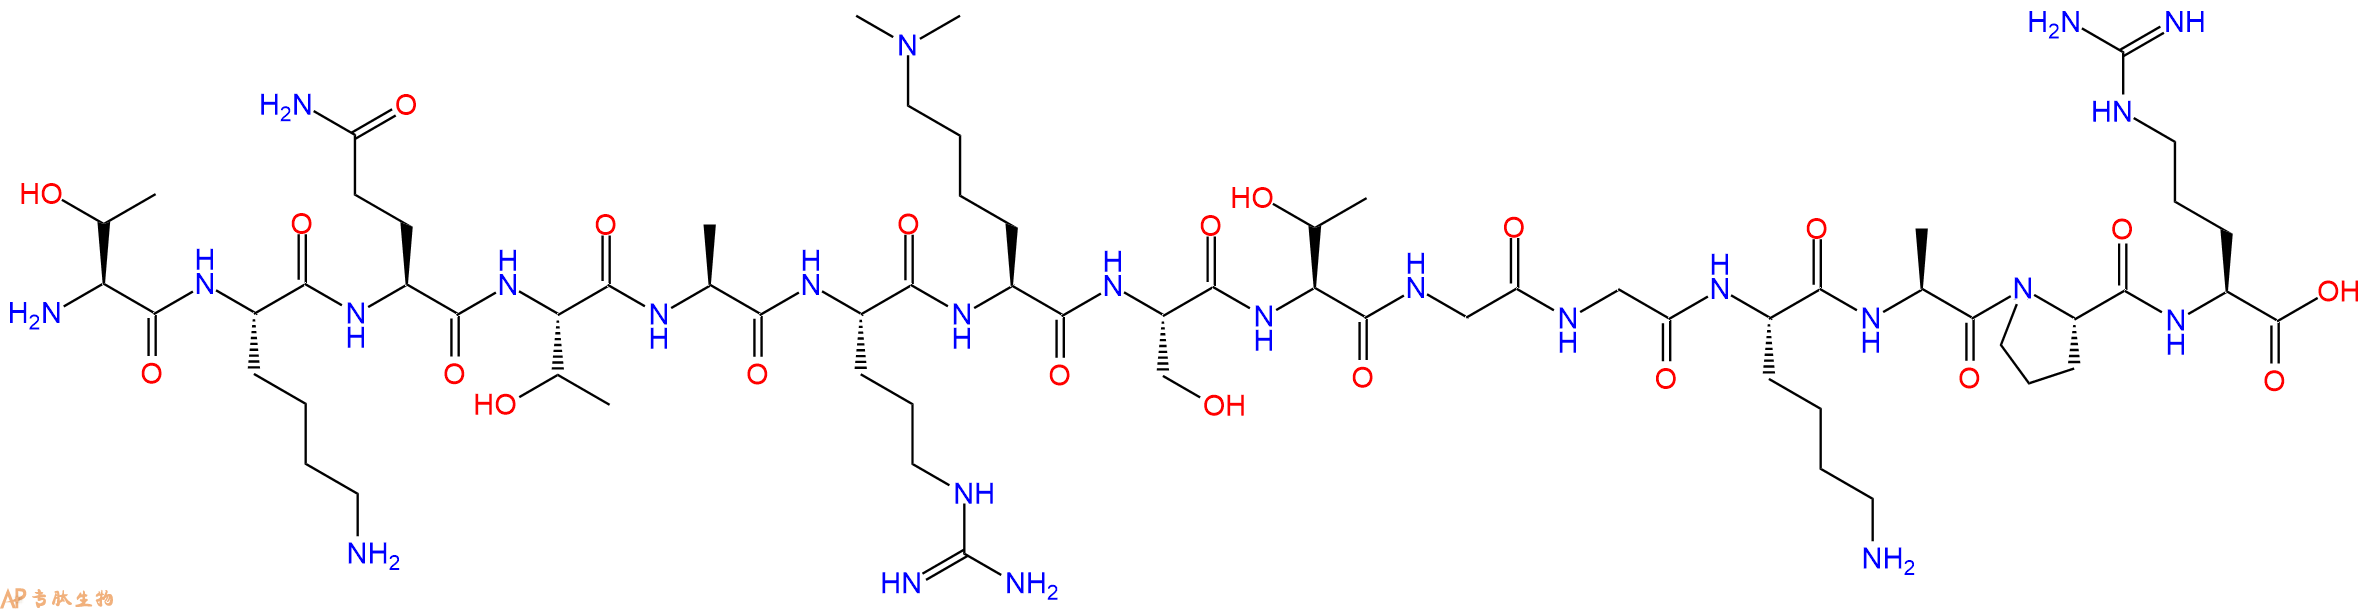 专肽生物产品组蛋白肽段[Lys(Me)29]-Histone H3(3-17), H3K9(Me2)